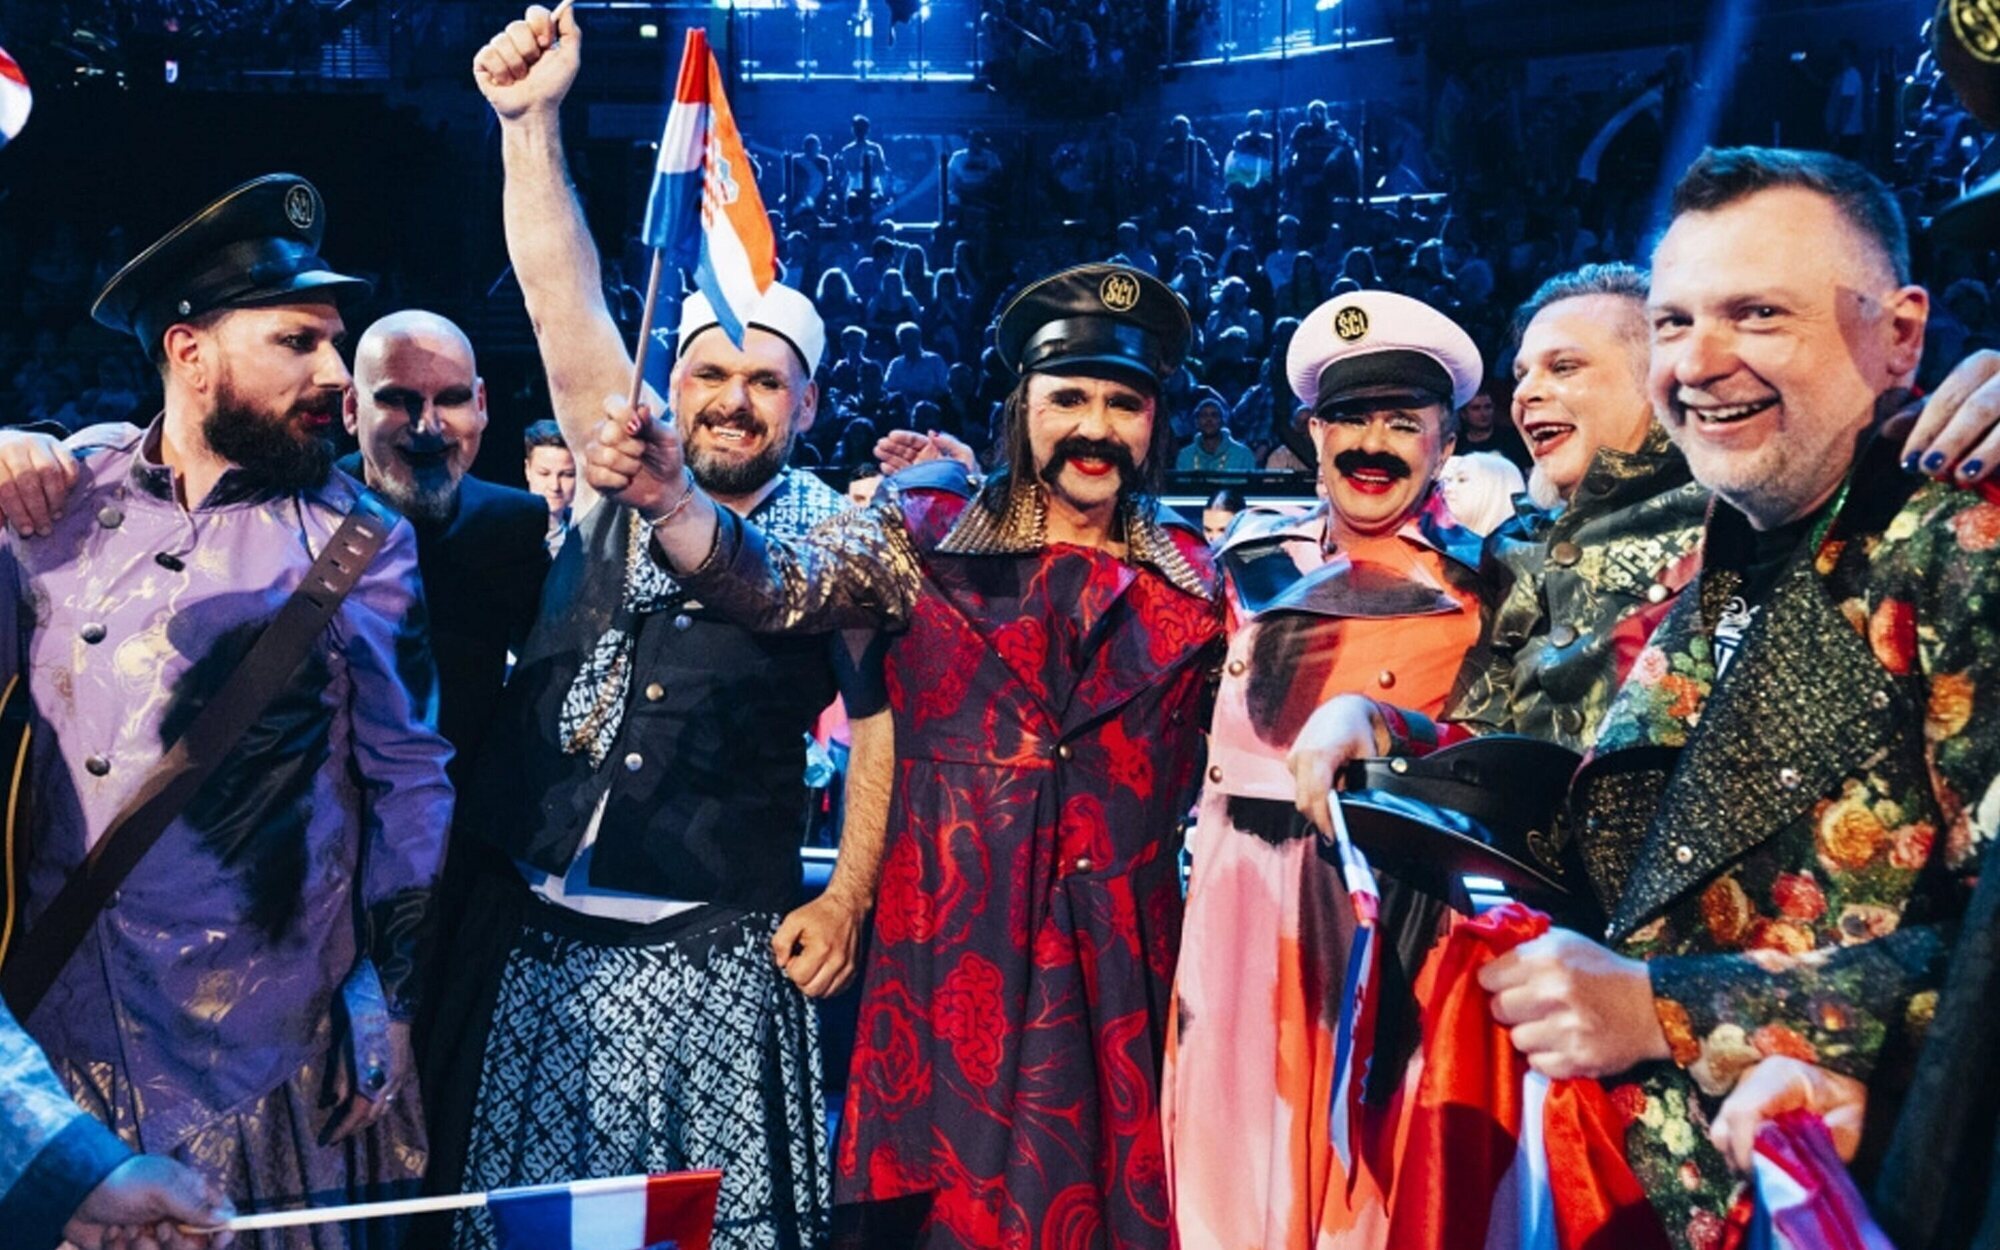 Suecia, Finlandia y Portugal acompañarán a Blanca Paloma en la primera mitad de la final de Eurovisión 2023